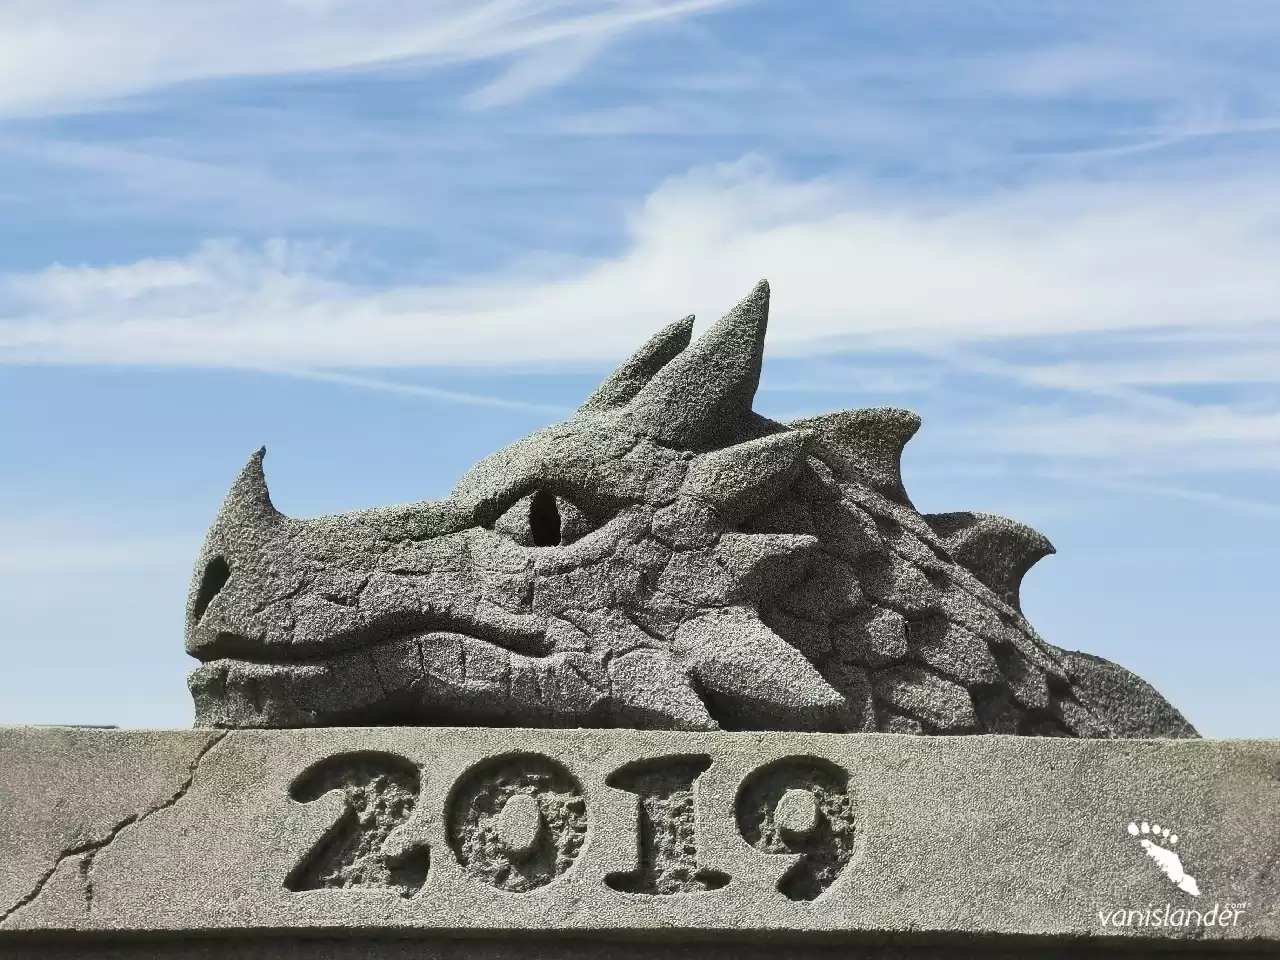 Dragon Sand Sculpture - Parksville Festival, Vancouver Island